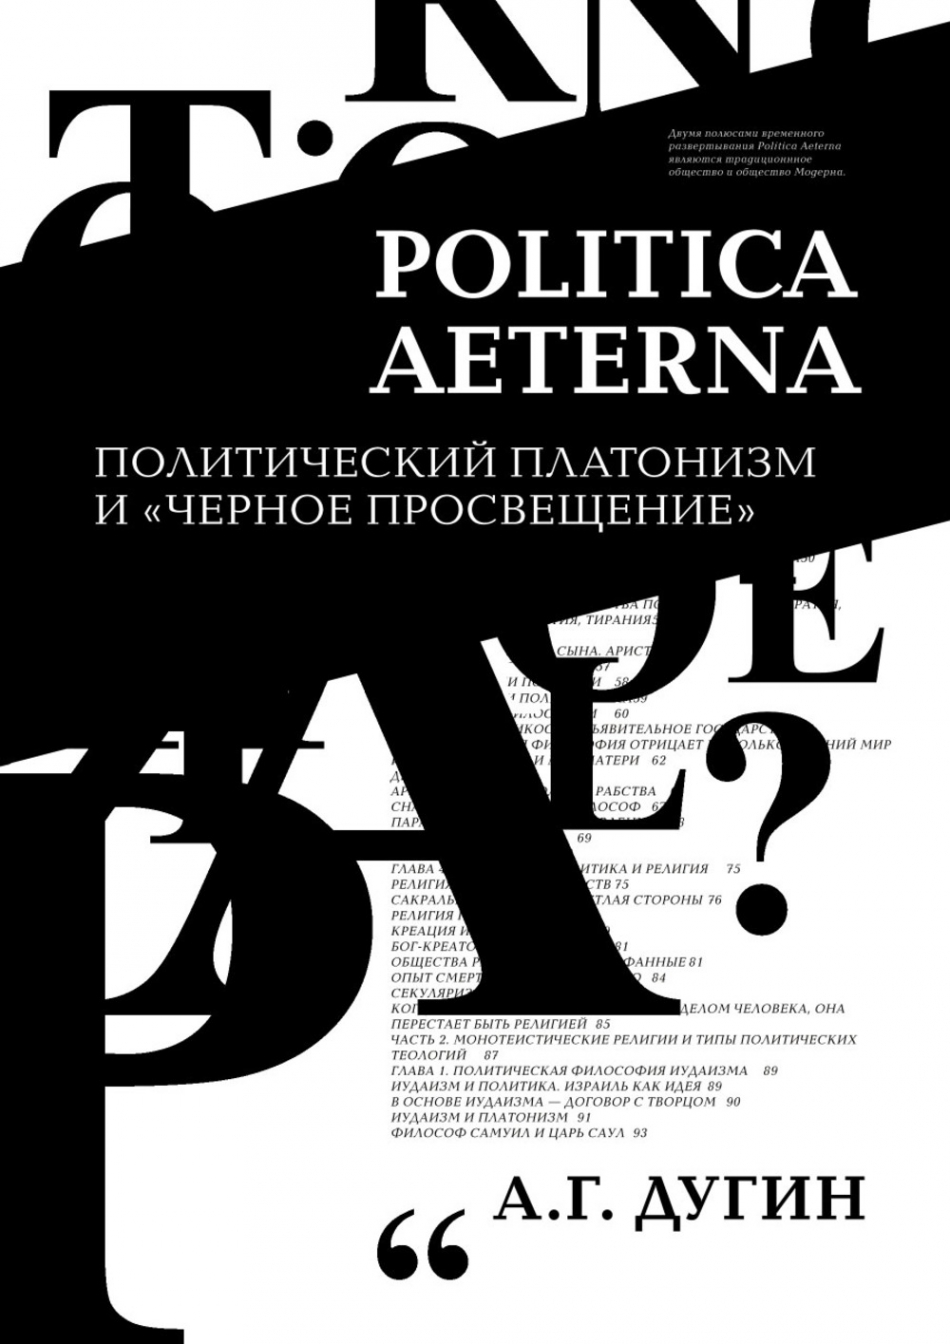 Дугин А.Г. Politica Aeterna. Политический платонизм и Черное Просвещение 